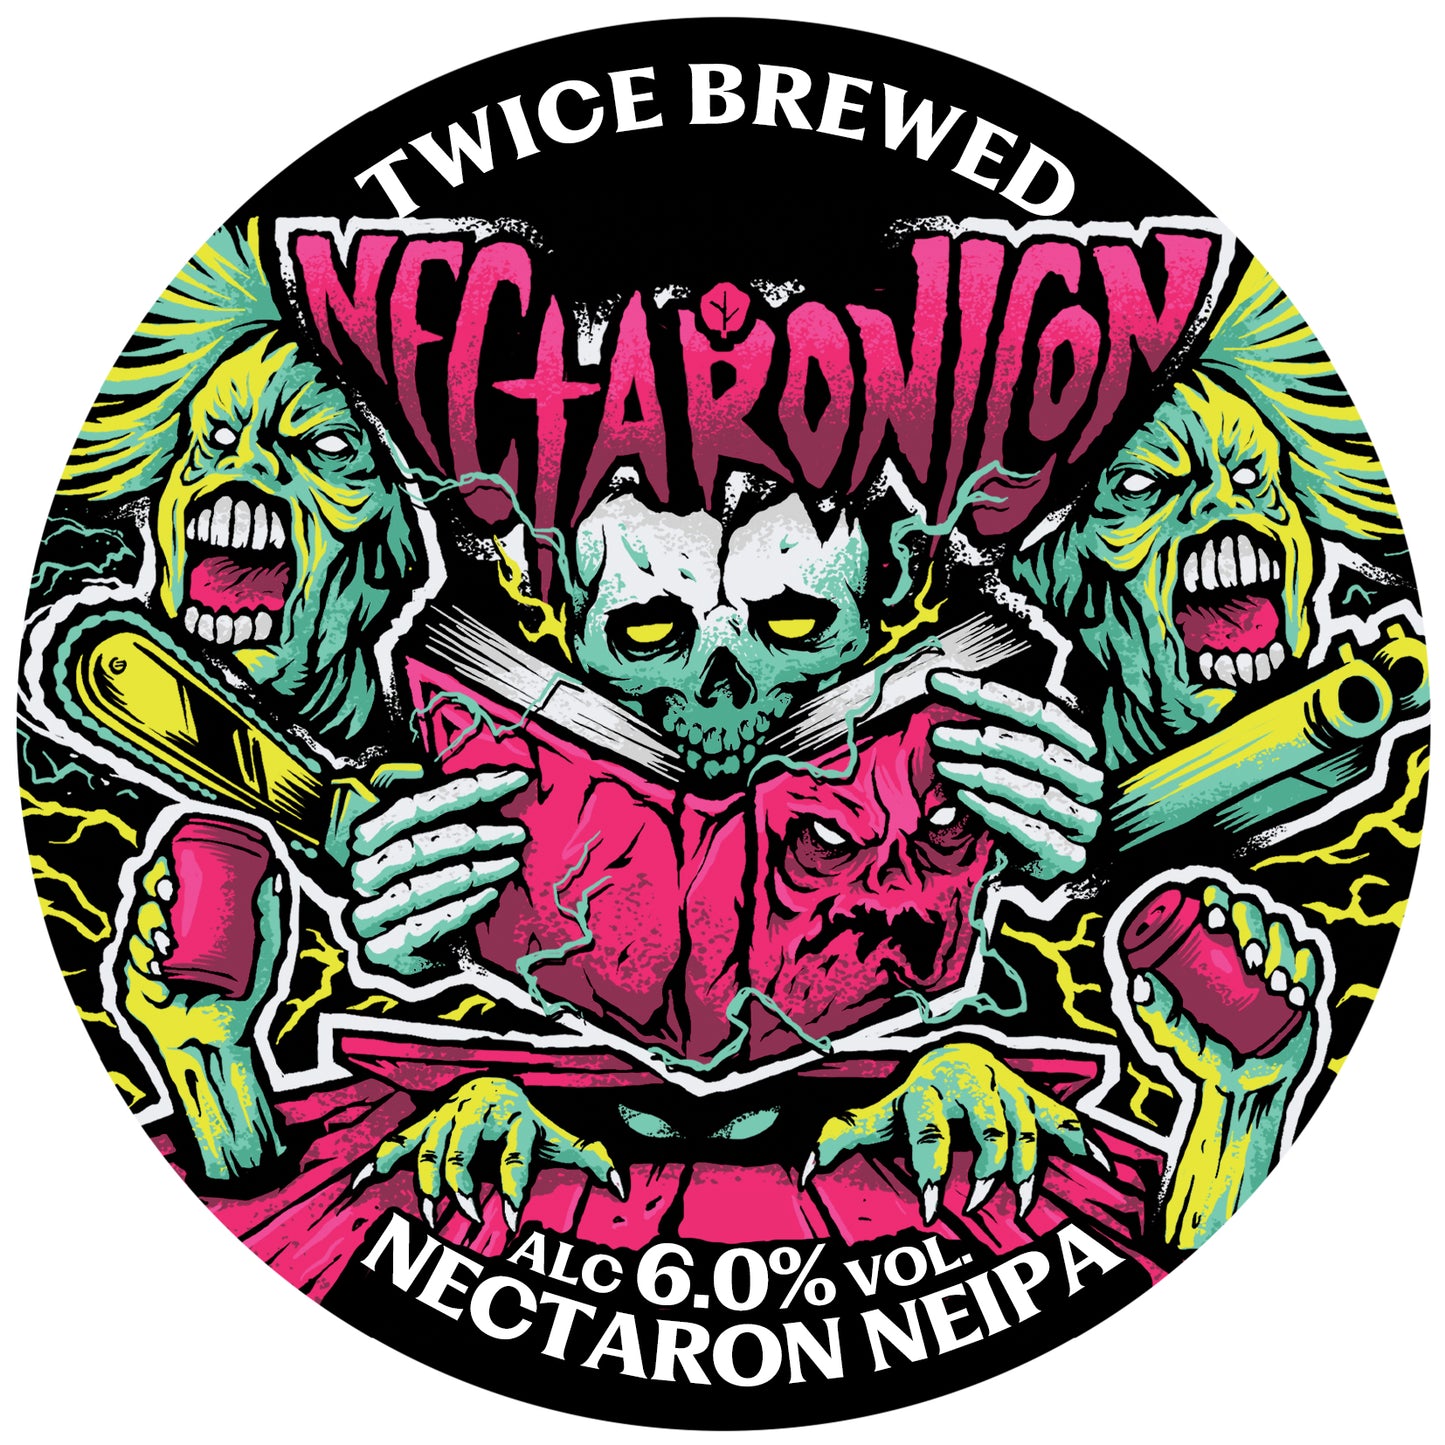 Nectaronicon, Nectaron NEIPA, 6.0% - 440ml Can